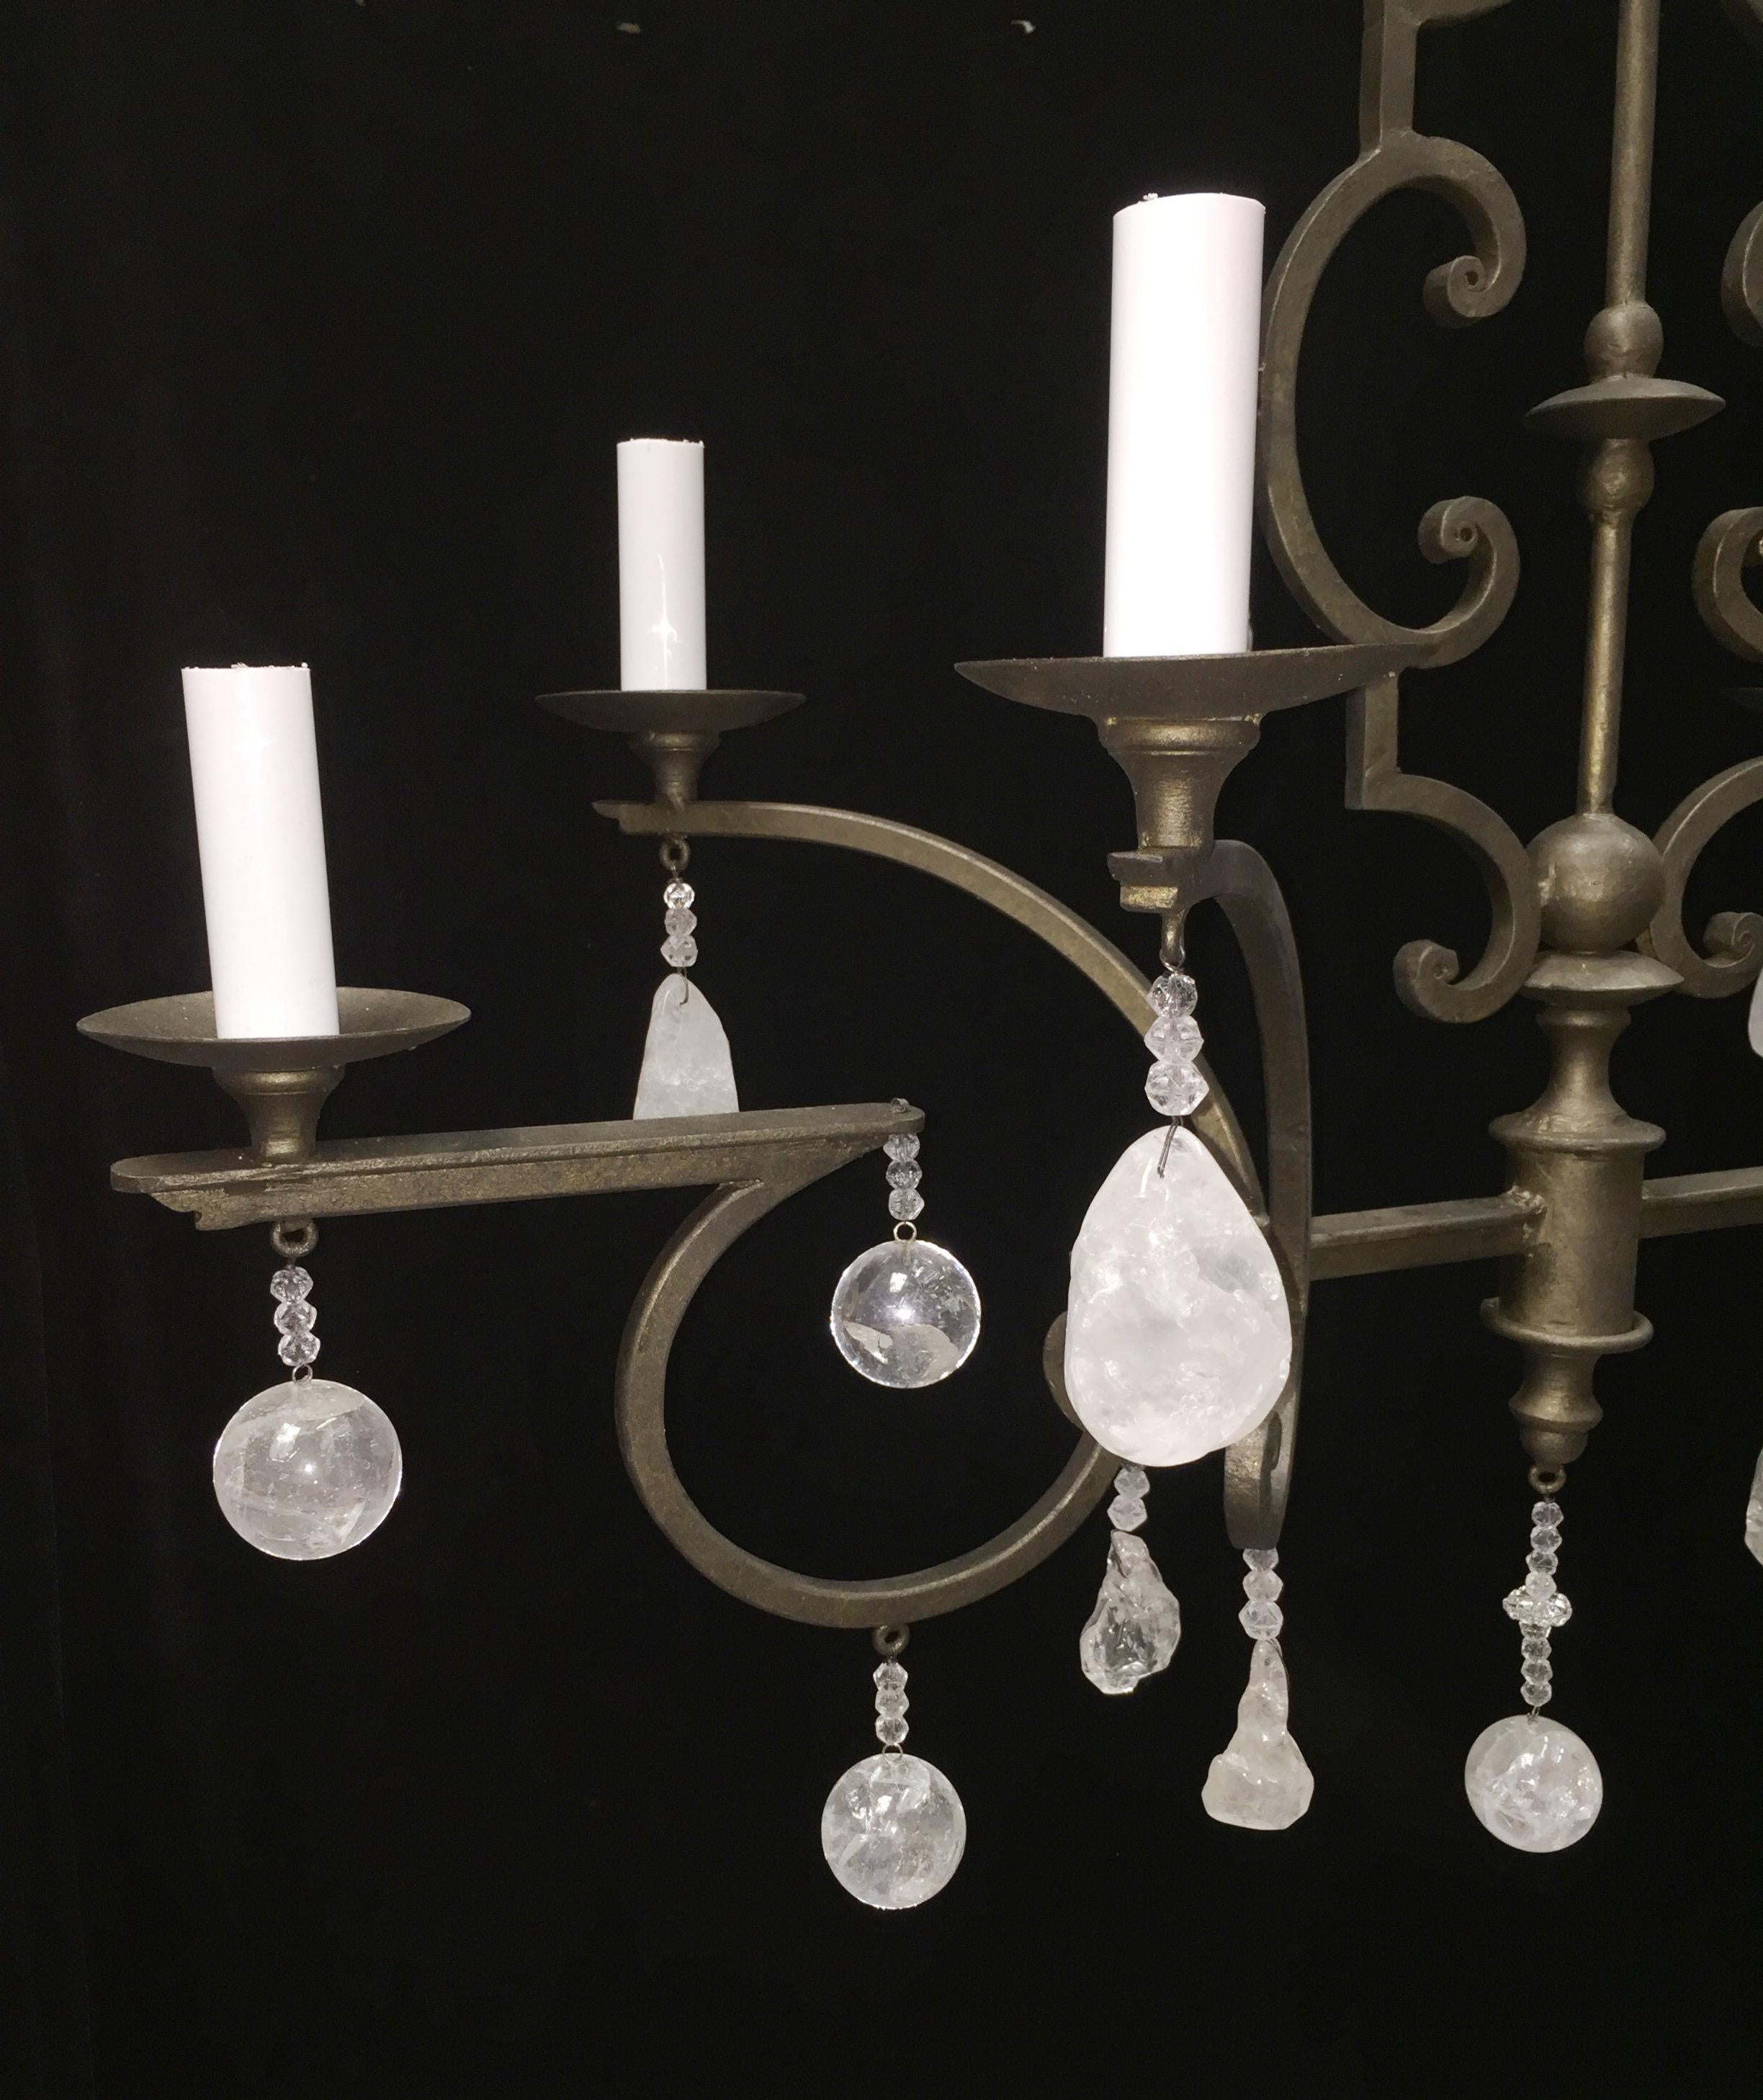 oblong chandeliers